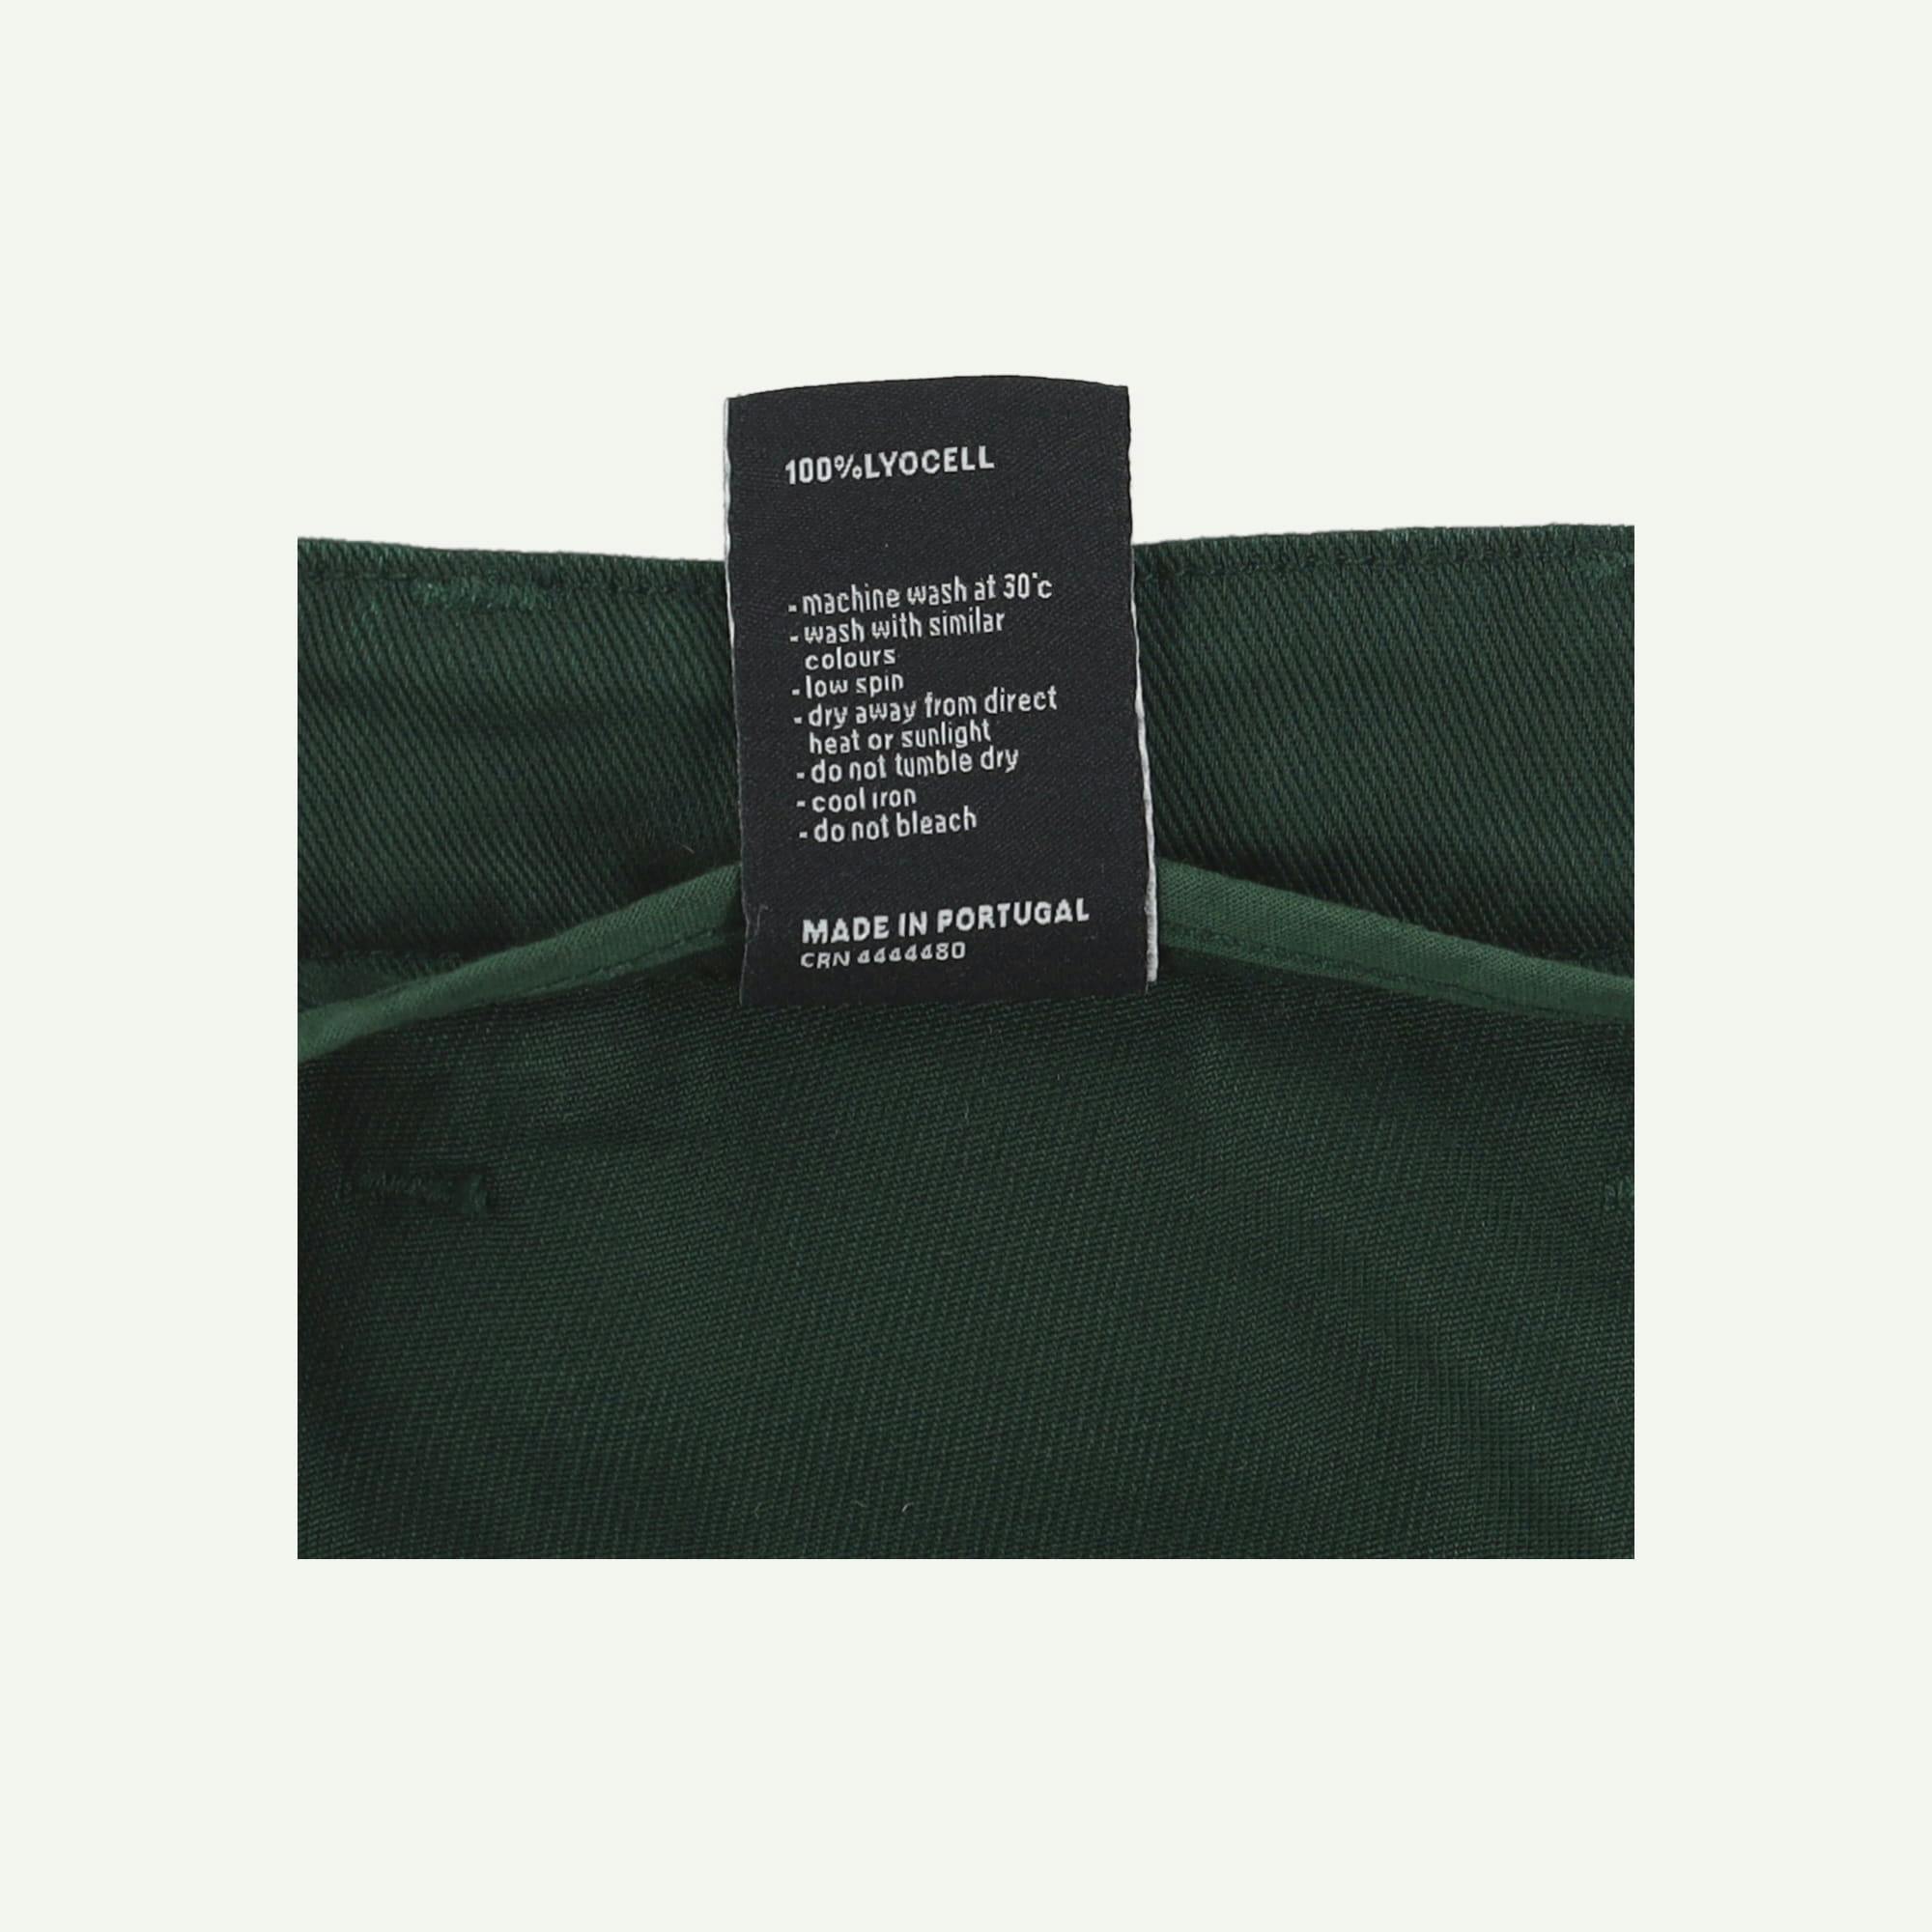 Finisterre Brand new Green Skirt